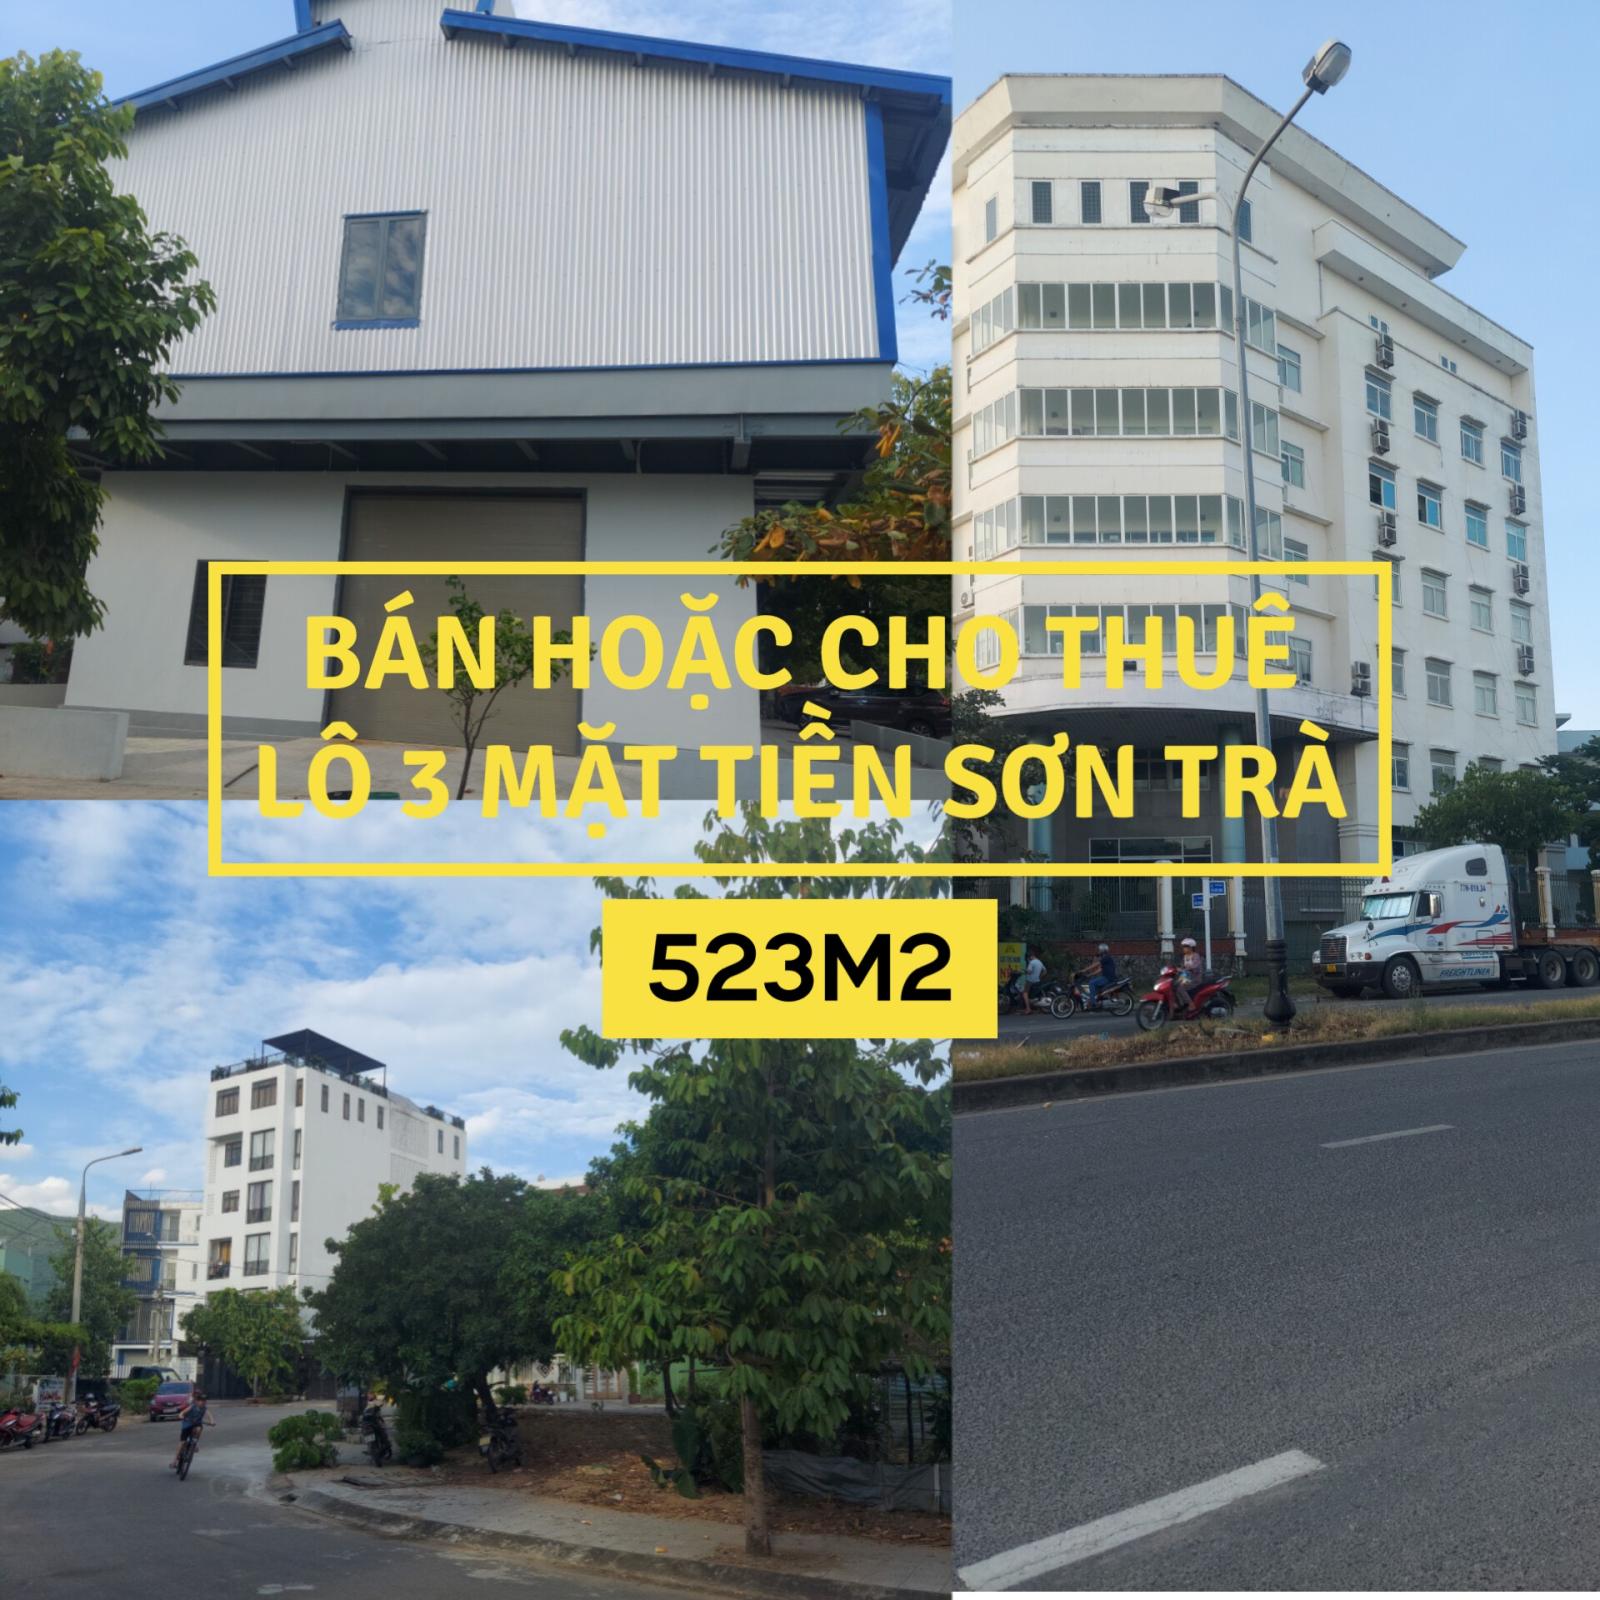 Bán hoặc Cho thuê 3 lô đất mặt tiền đường Mân Quang 9-10-11, mặt còn lại view công viên